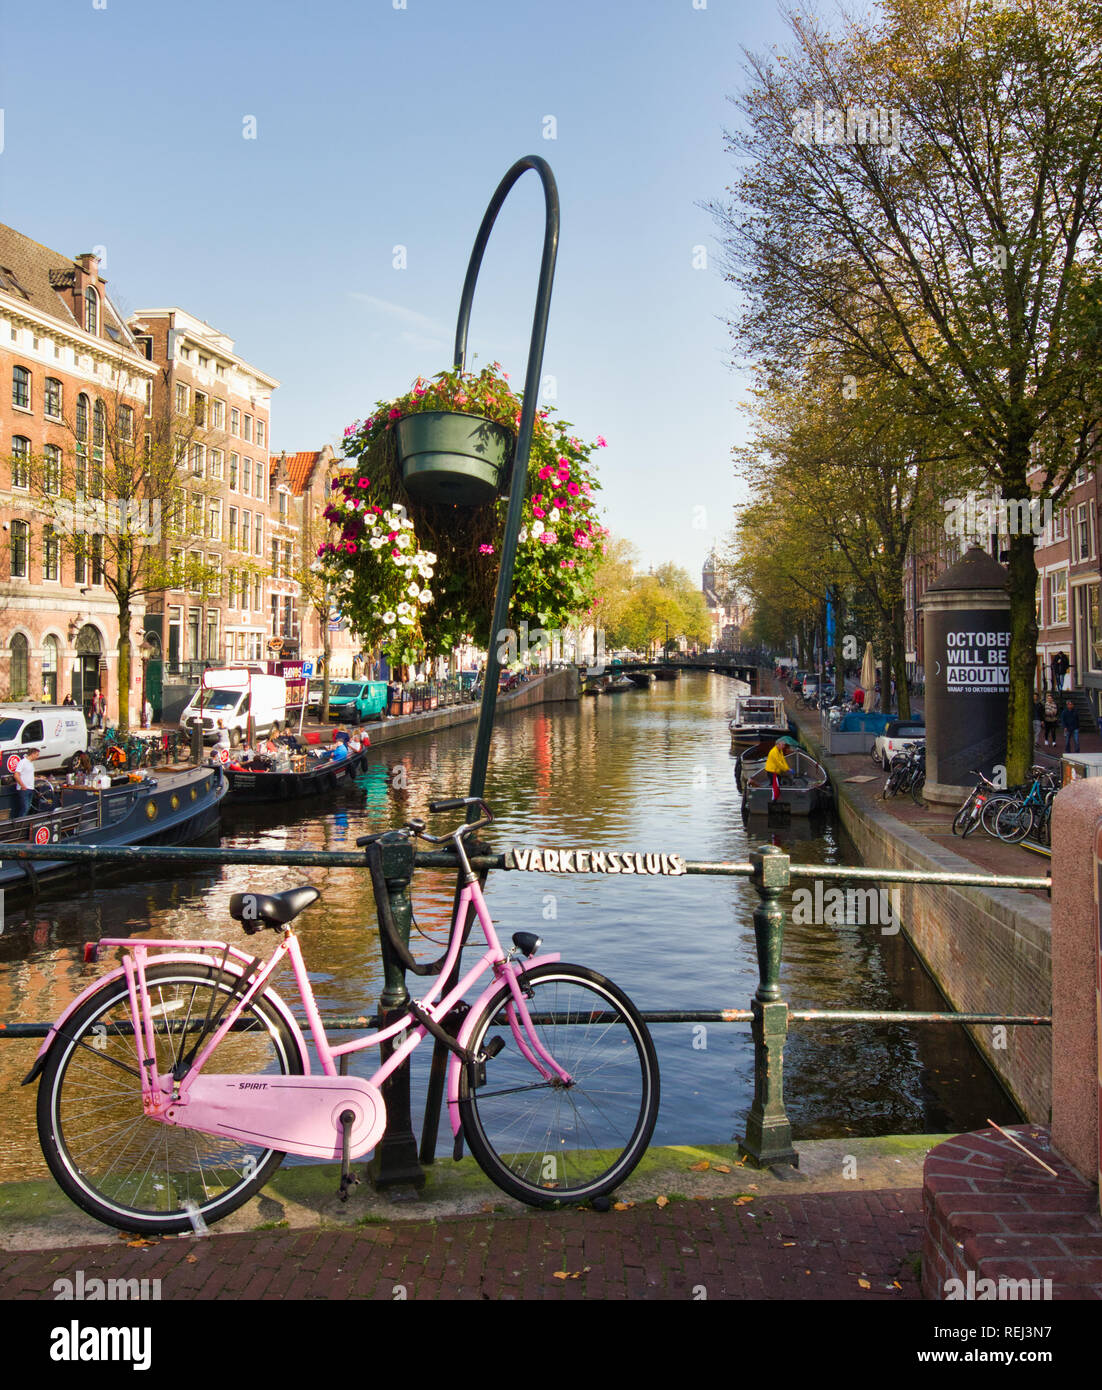 Rosa di sedersi e la prego di bicicletta su Varkenssluis (Varkens Serratura Serratura di maiale) ponte, Oudezijds Voorburgwal, il quartiere a luci rosse di Amsterdam, Olanda, Europa Foto Stock